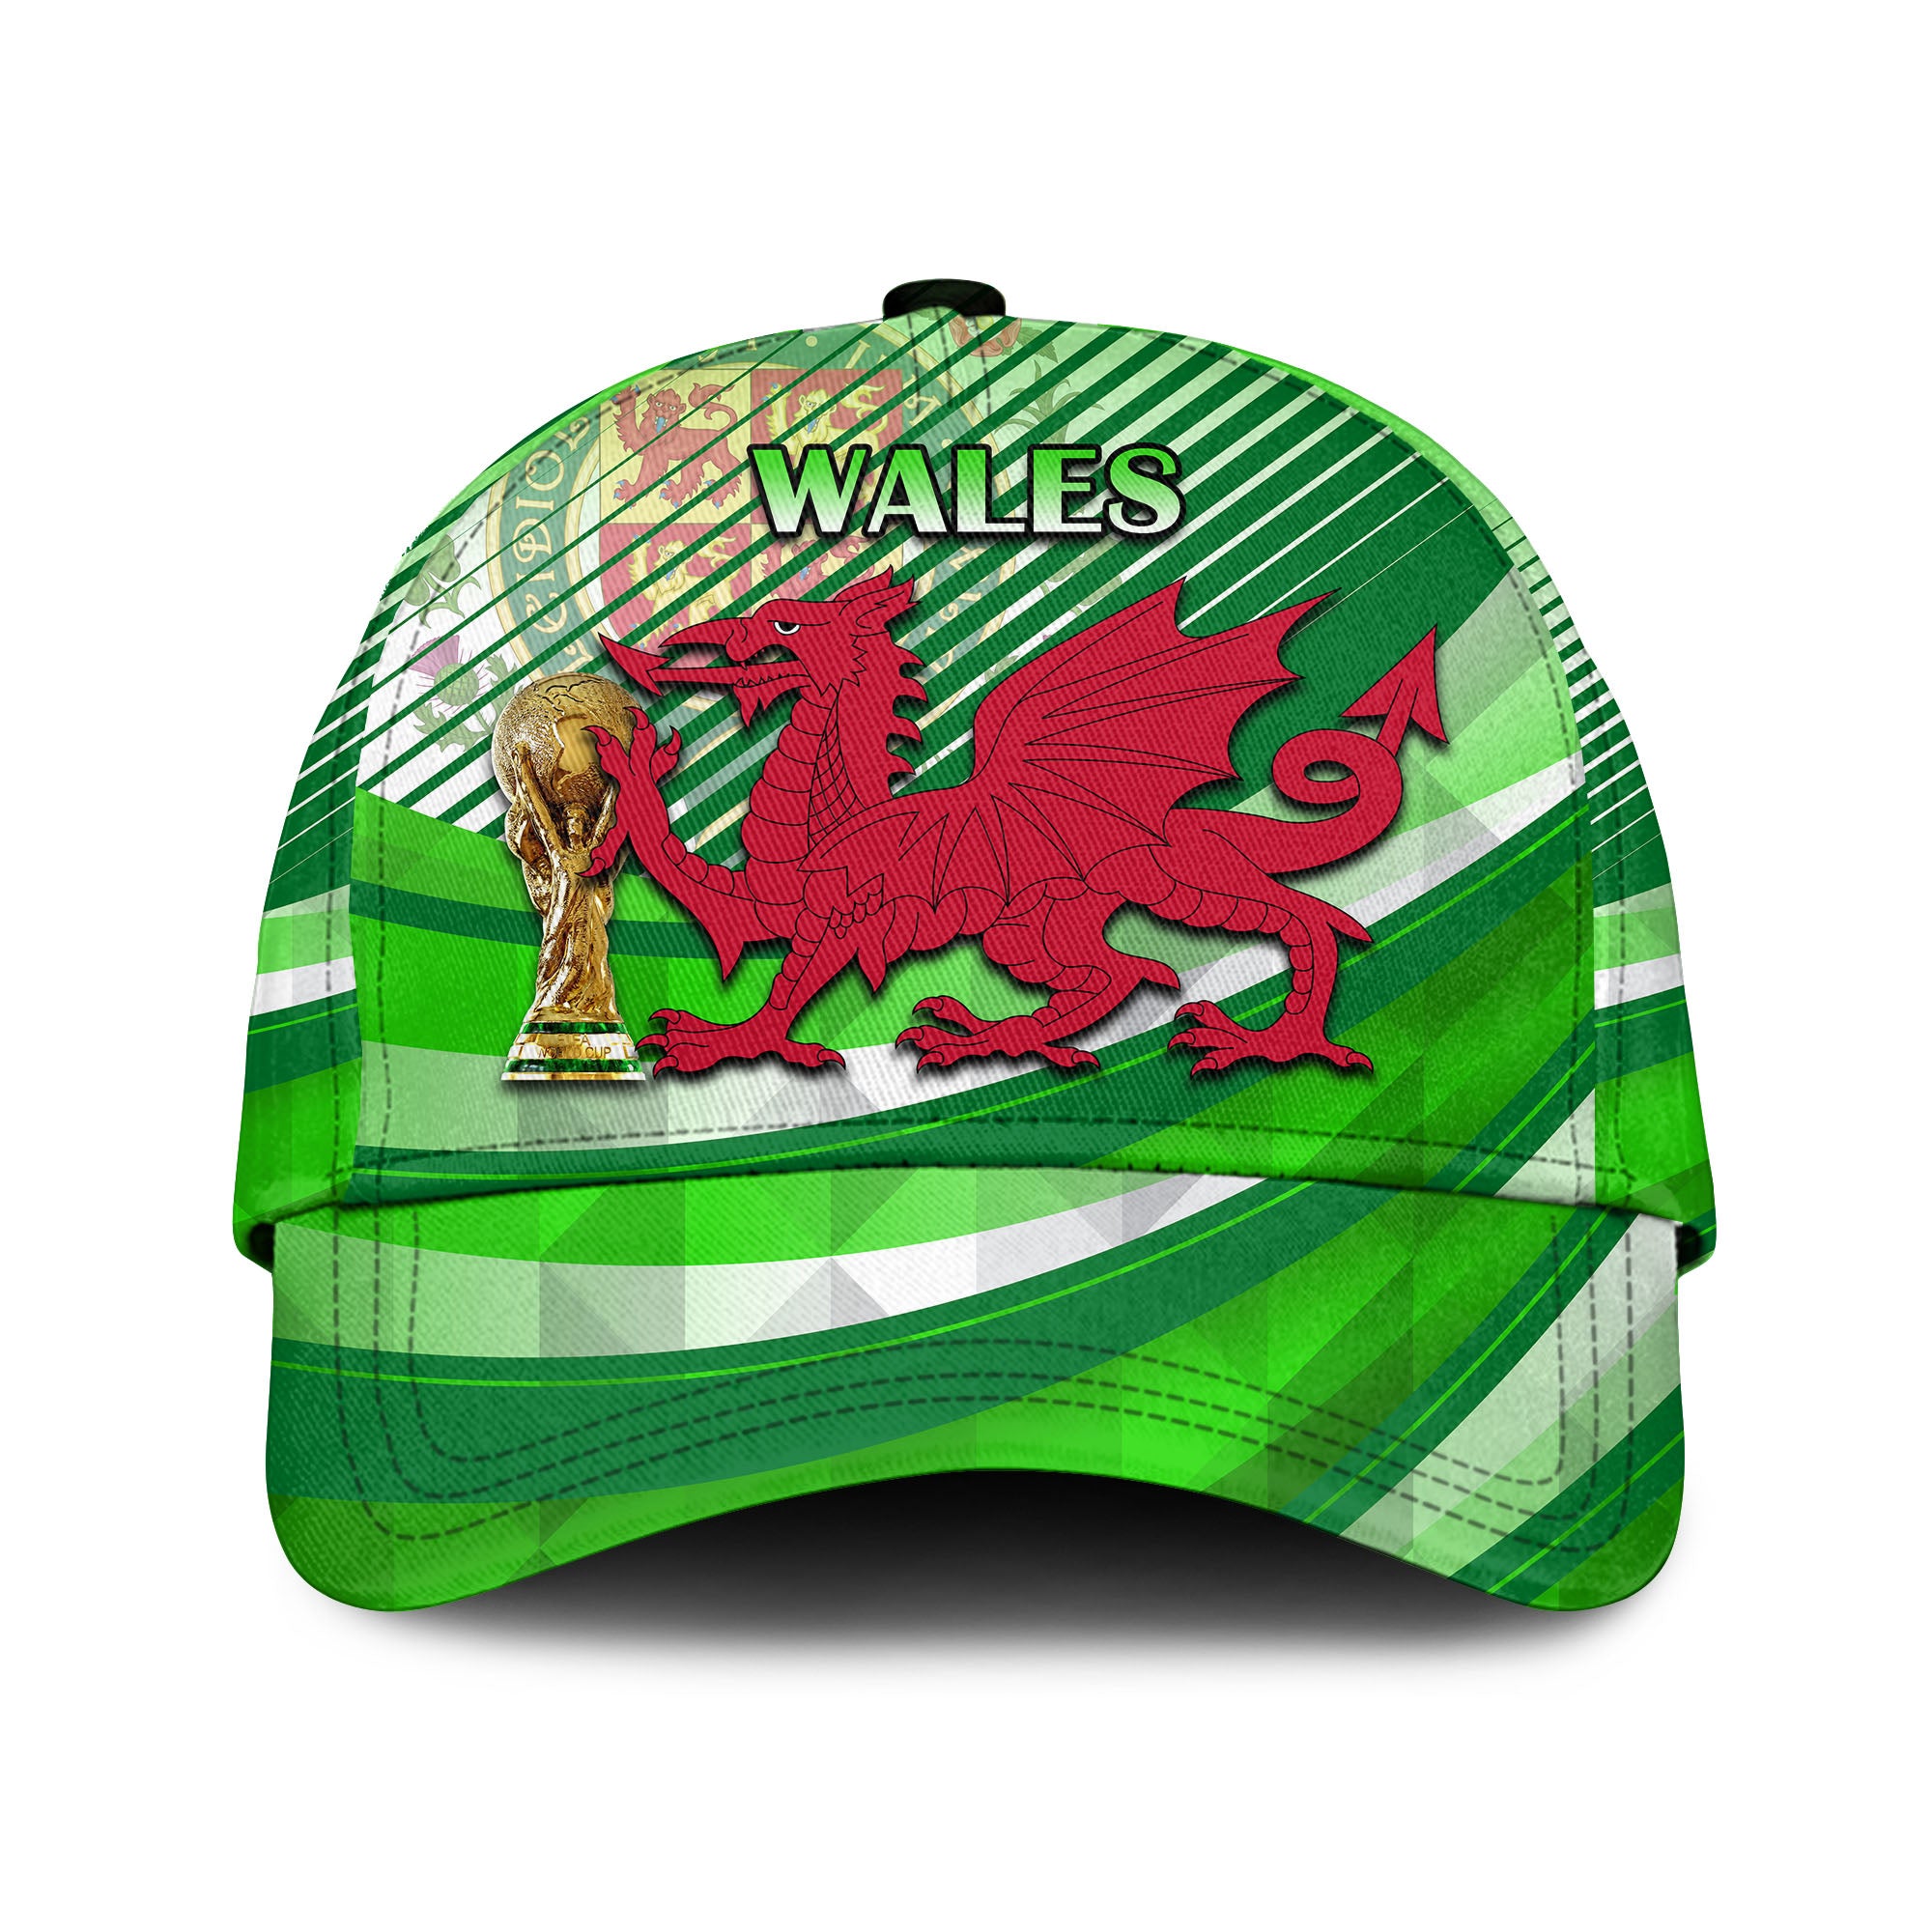 Wales Football Champions Qatar 2022 Sport Style Green LT9